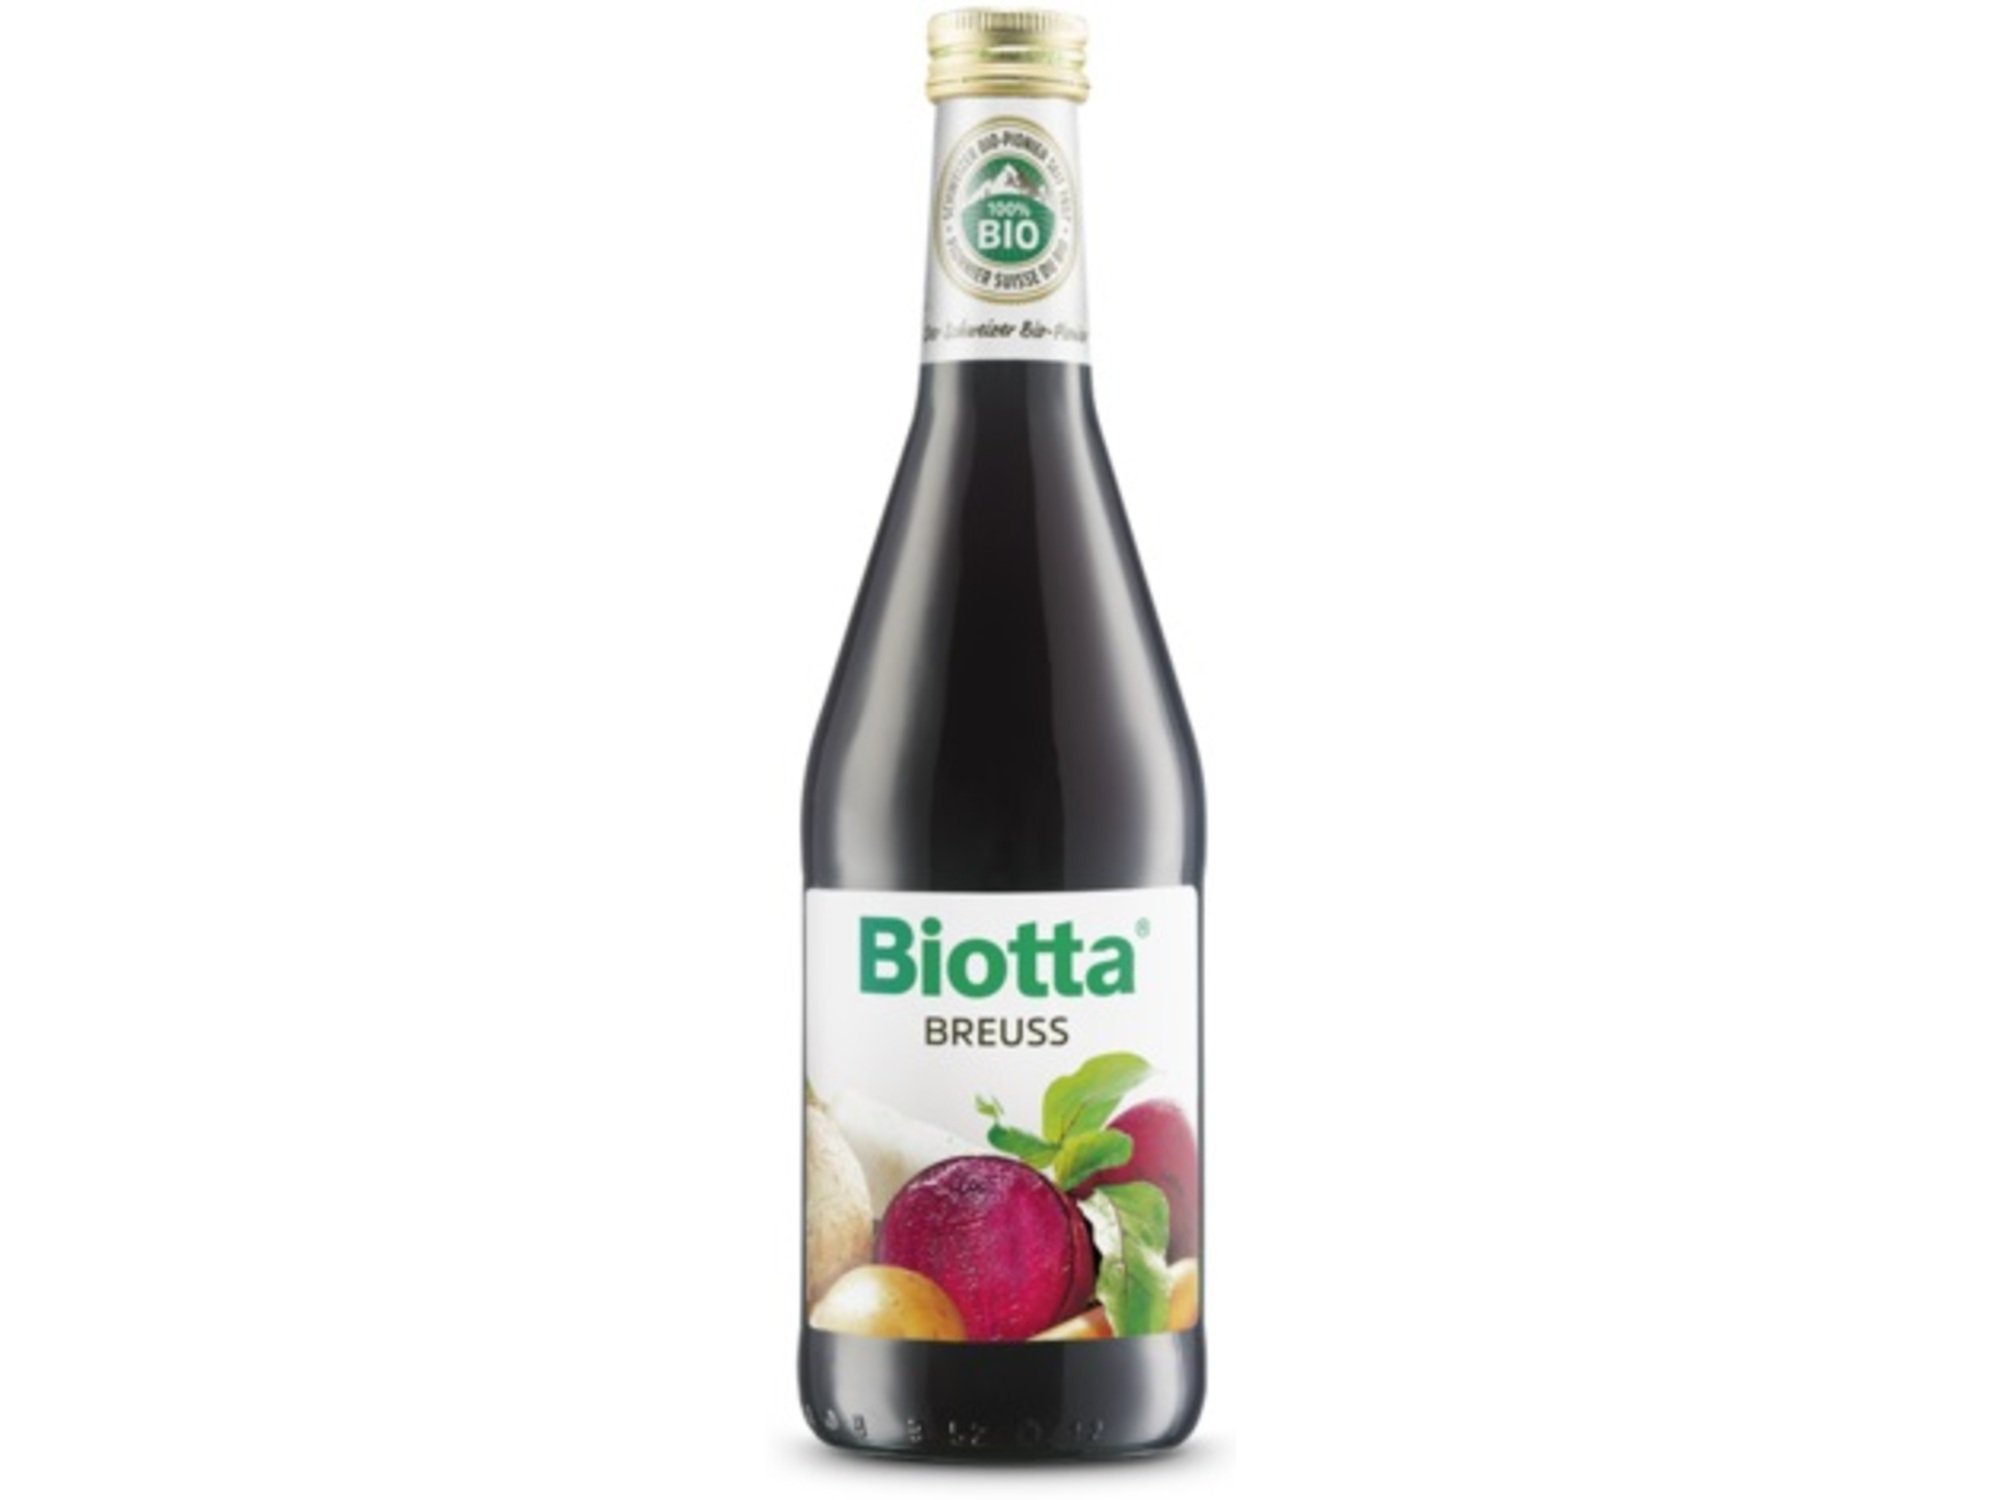 Biotta Breuss 500ml